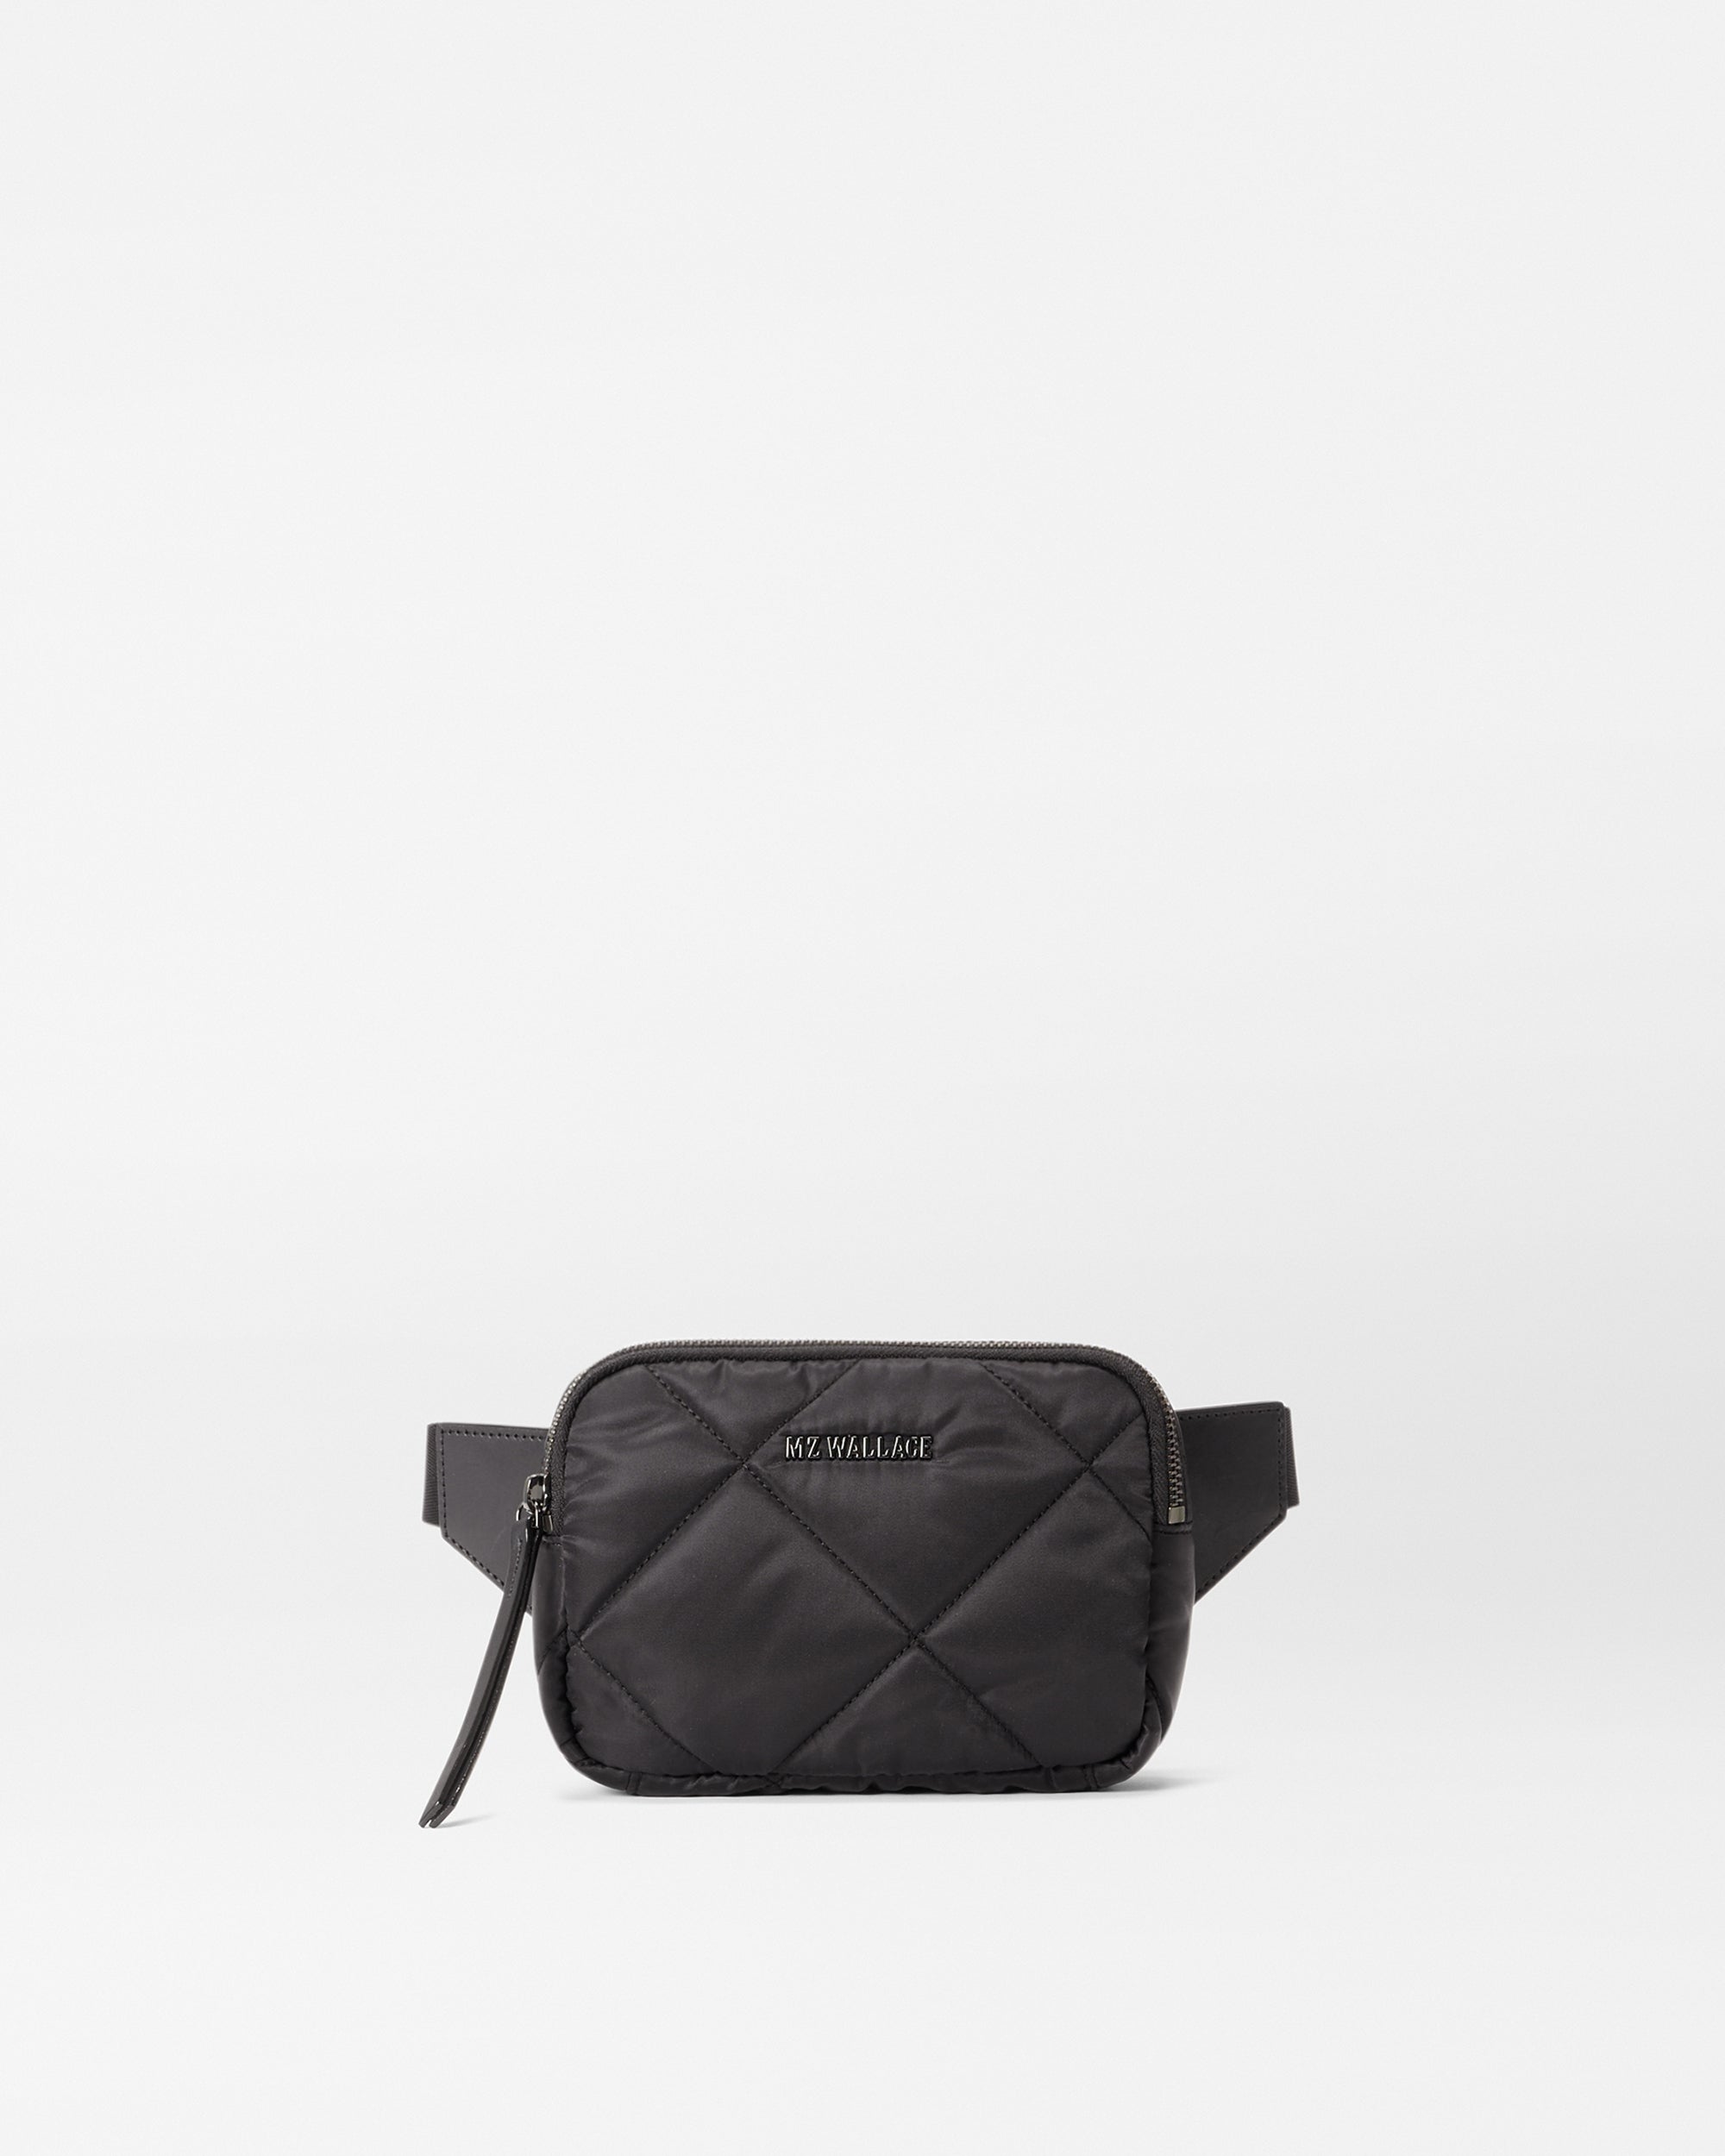 Black Leather Quilted Belt Bag Crossbody Waist Bag